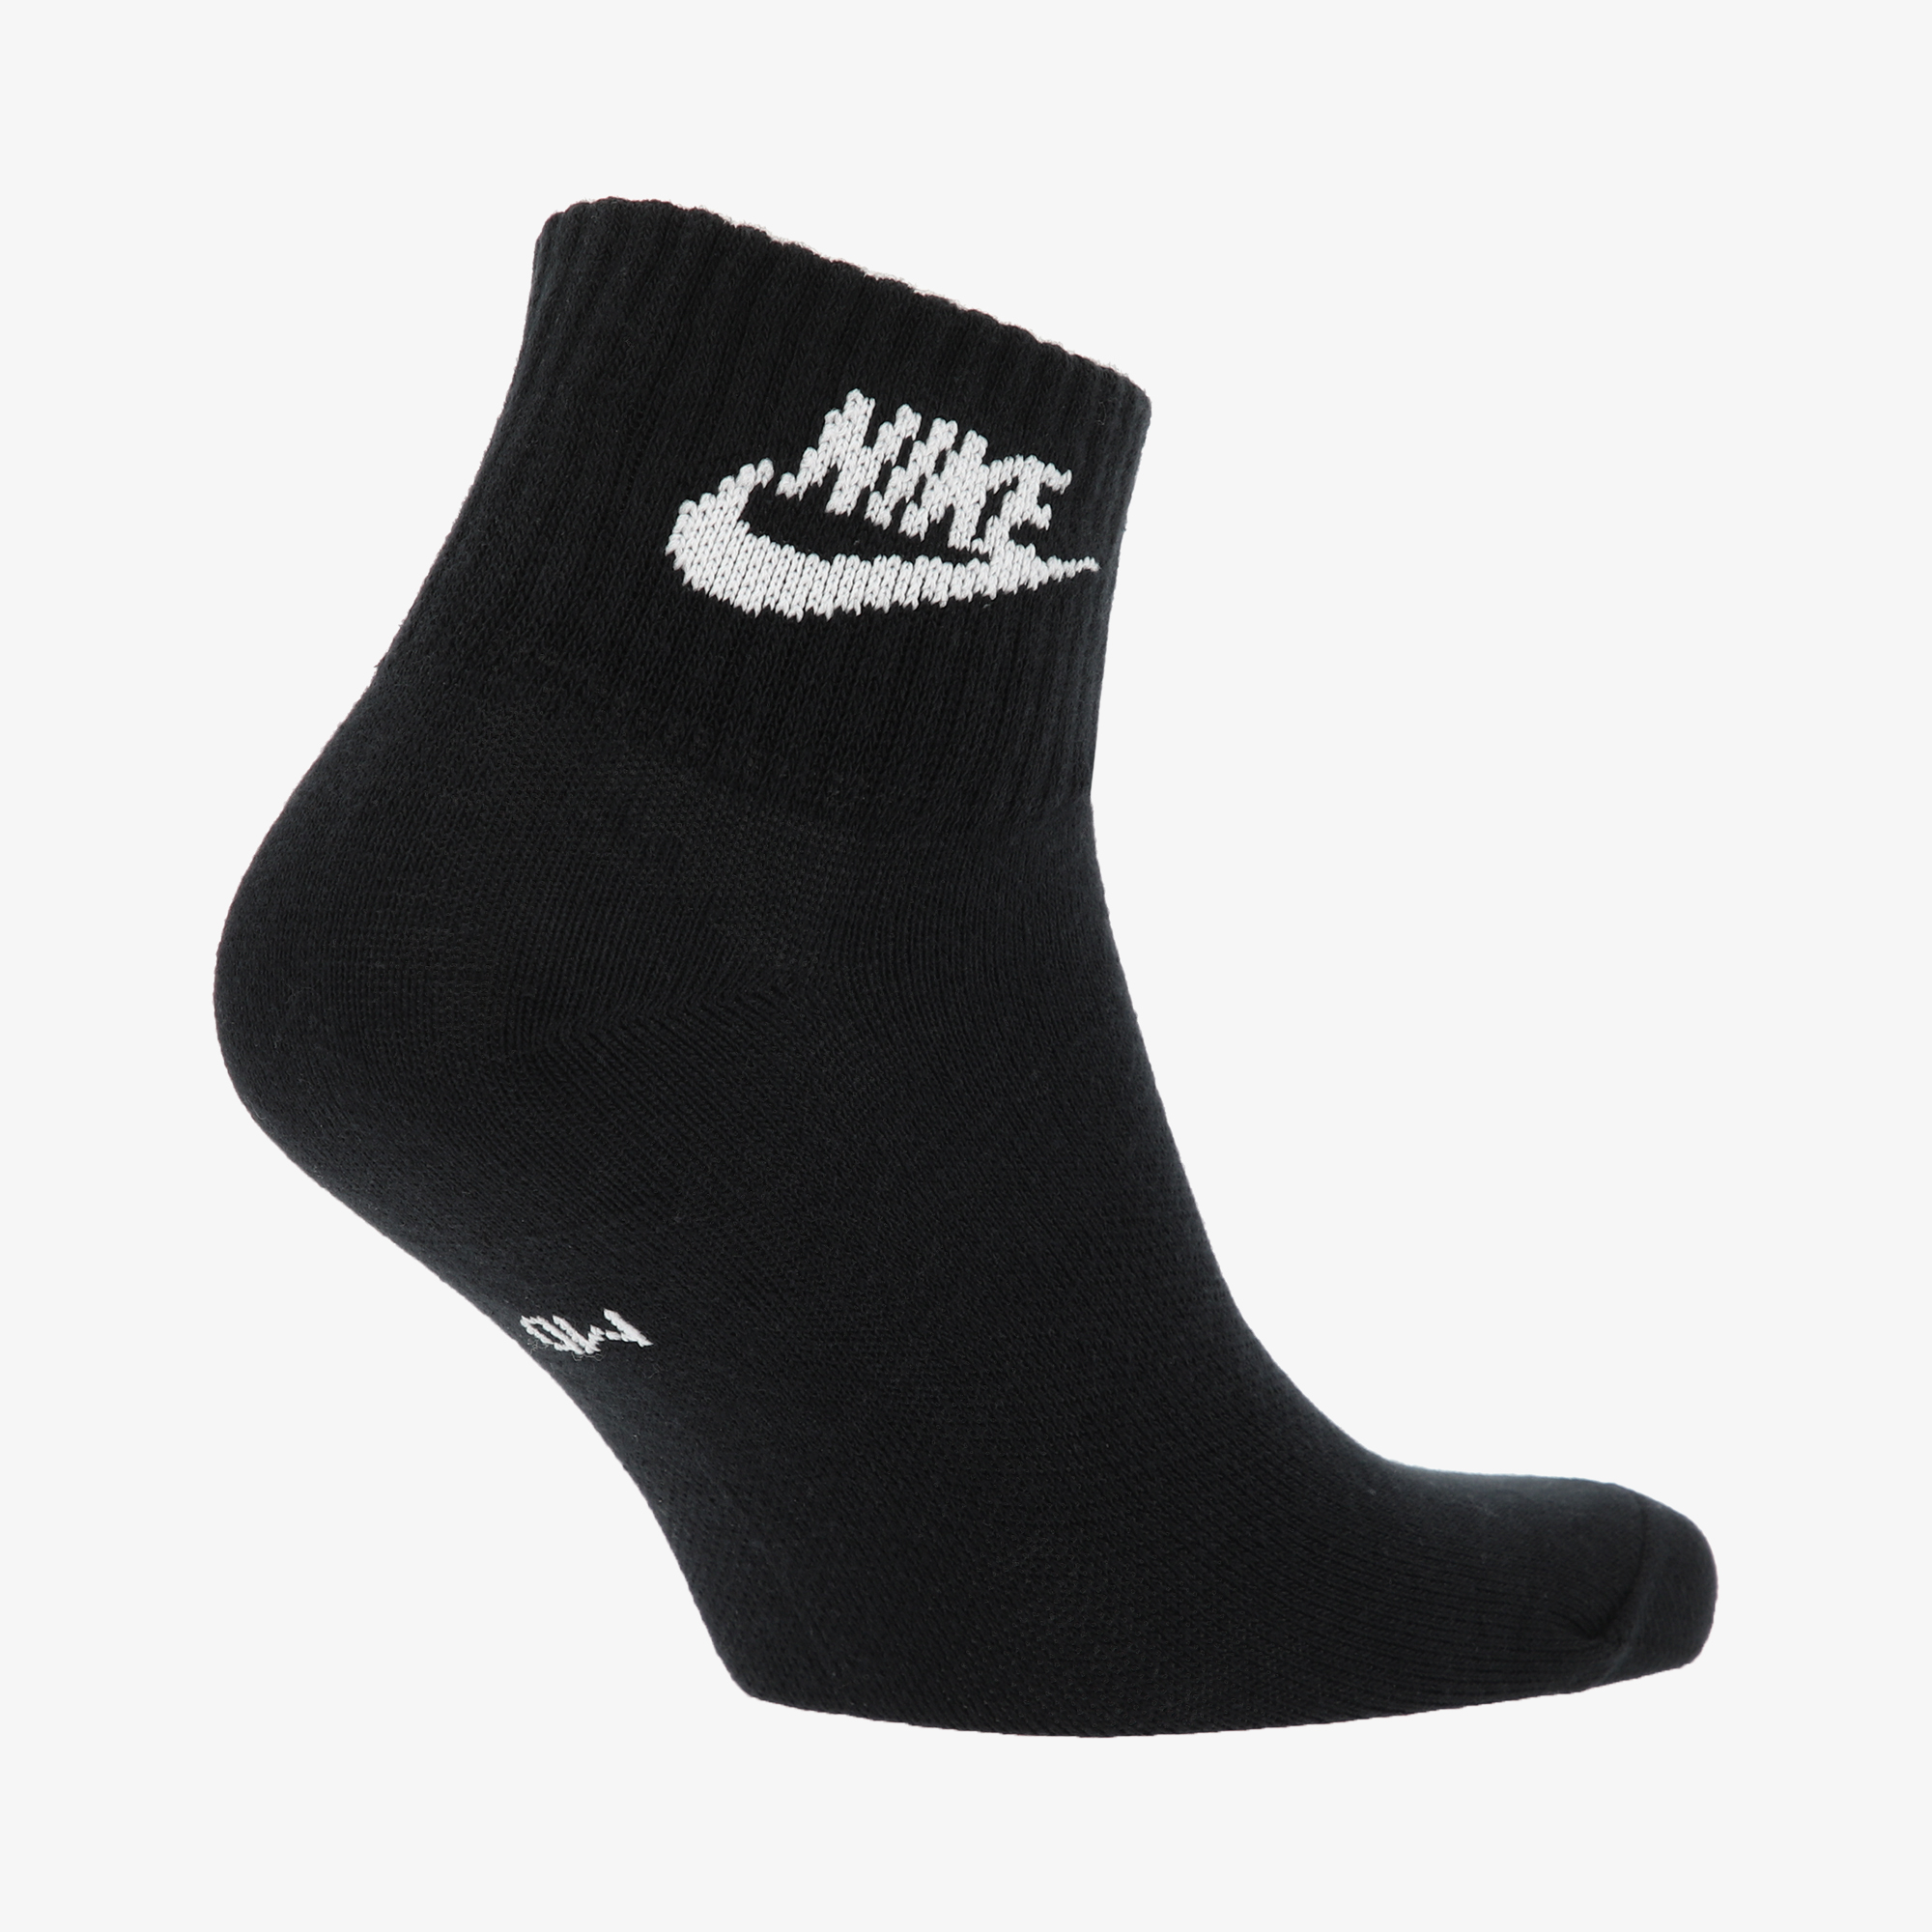 Носки Nike Nike Everyday Essential, 3 пары SK0110N06-010, цвет черный, размер 37-41 - фото 2